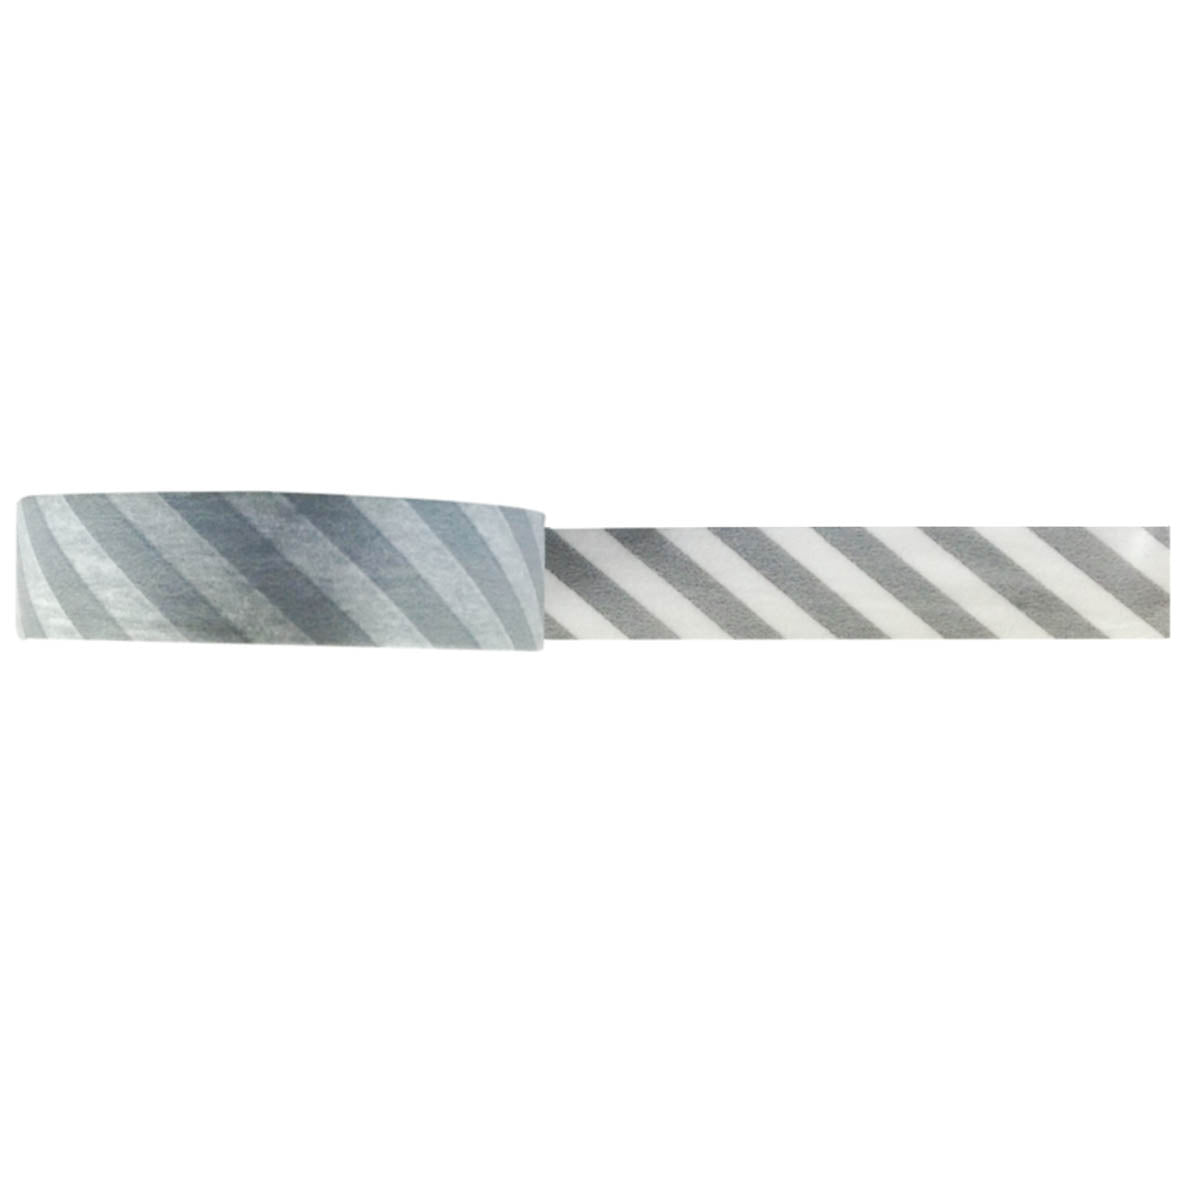 Wrapables Striped Japanese Washi Masking Tape